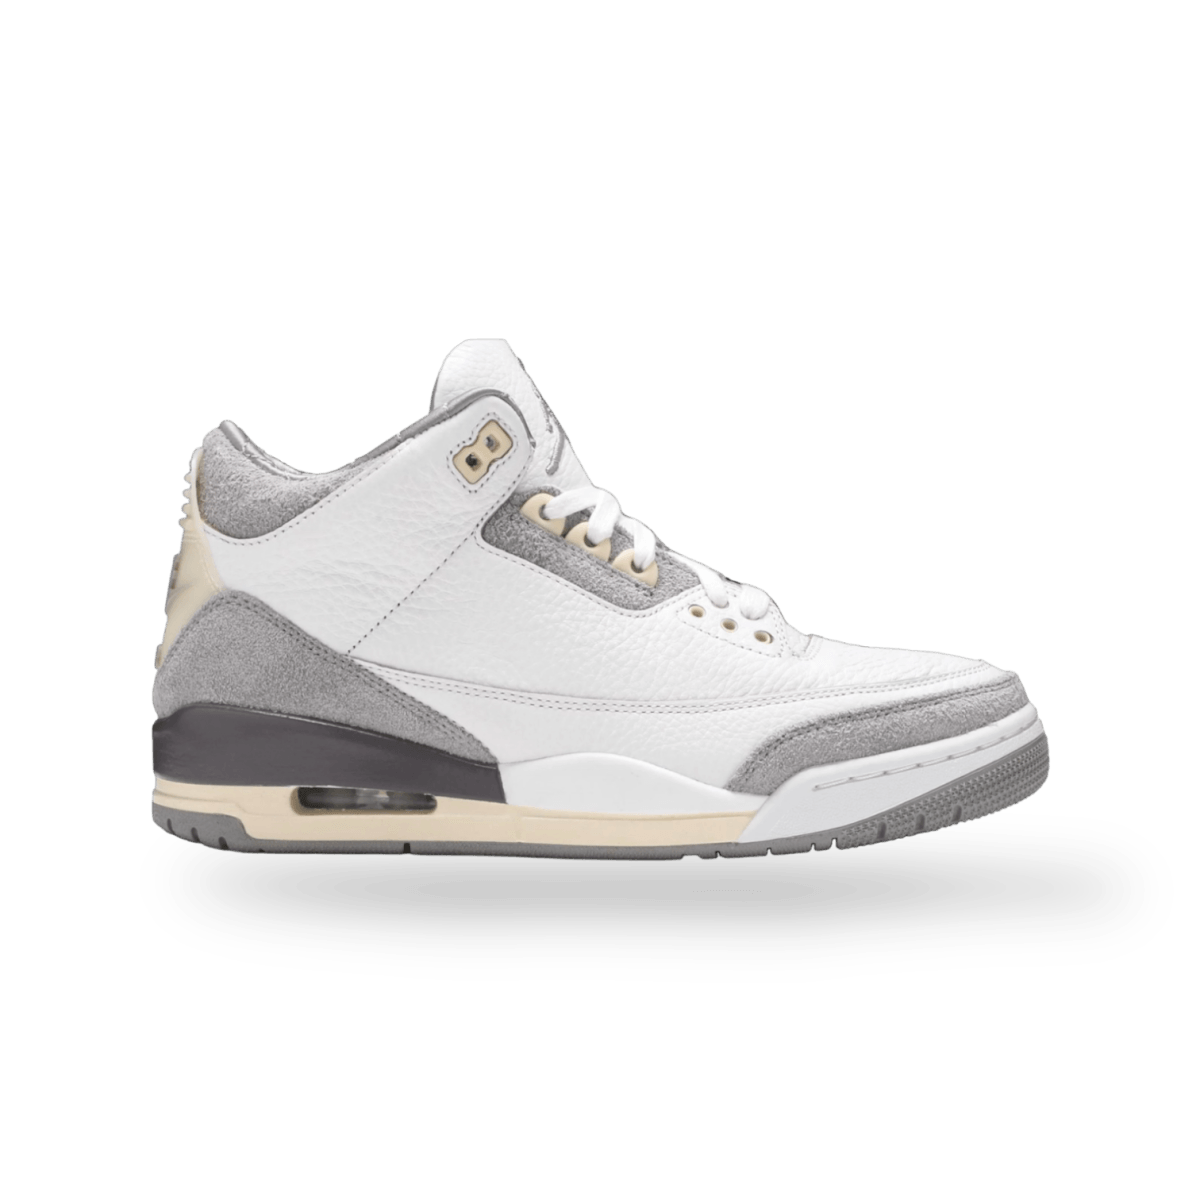 Jordan 3 Retro SP A Ma Maniére 'Raised By Women' - Mid Sneaker - Jawns on Fire Sneakers & Streetwear